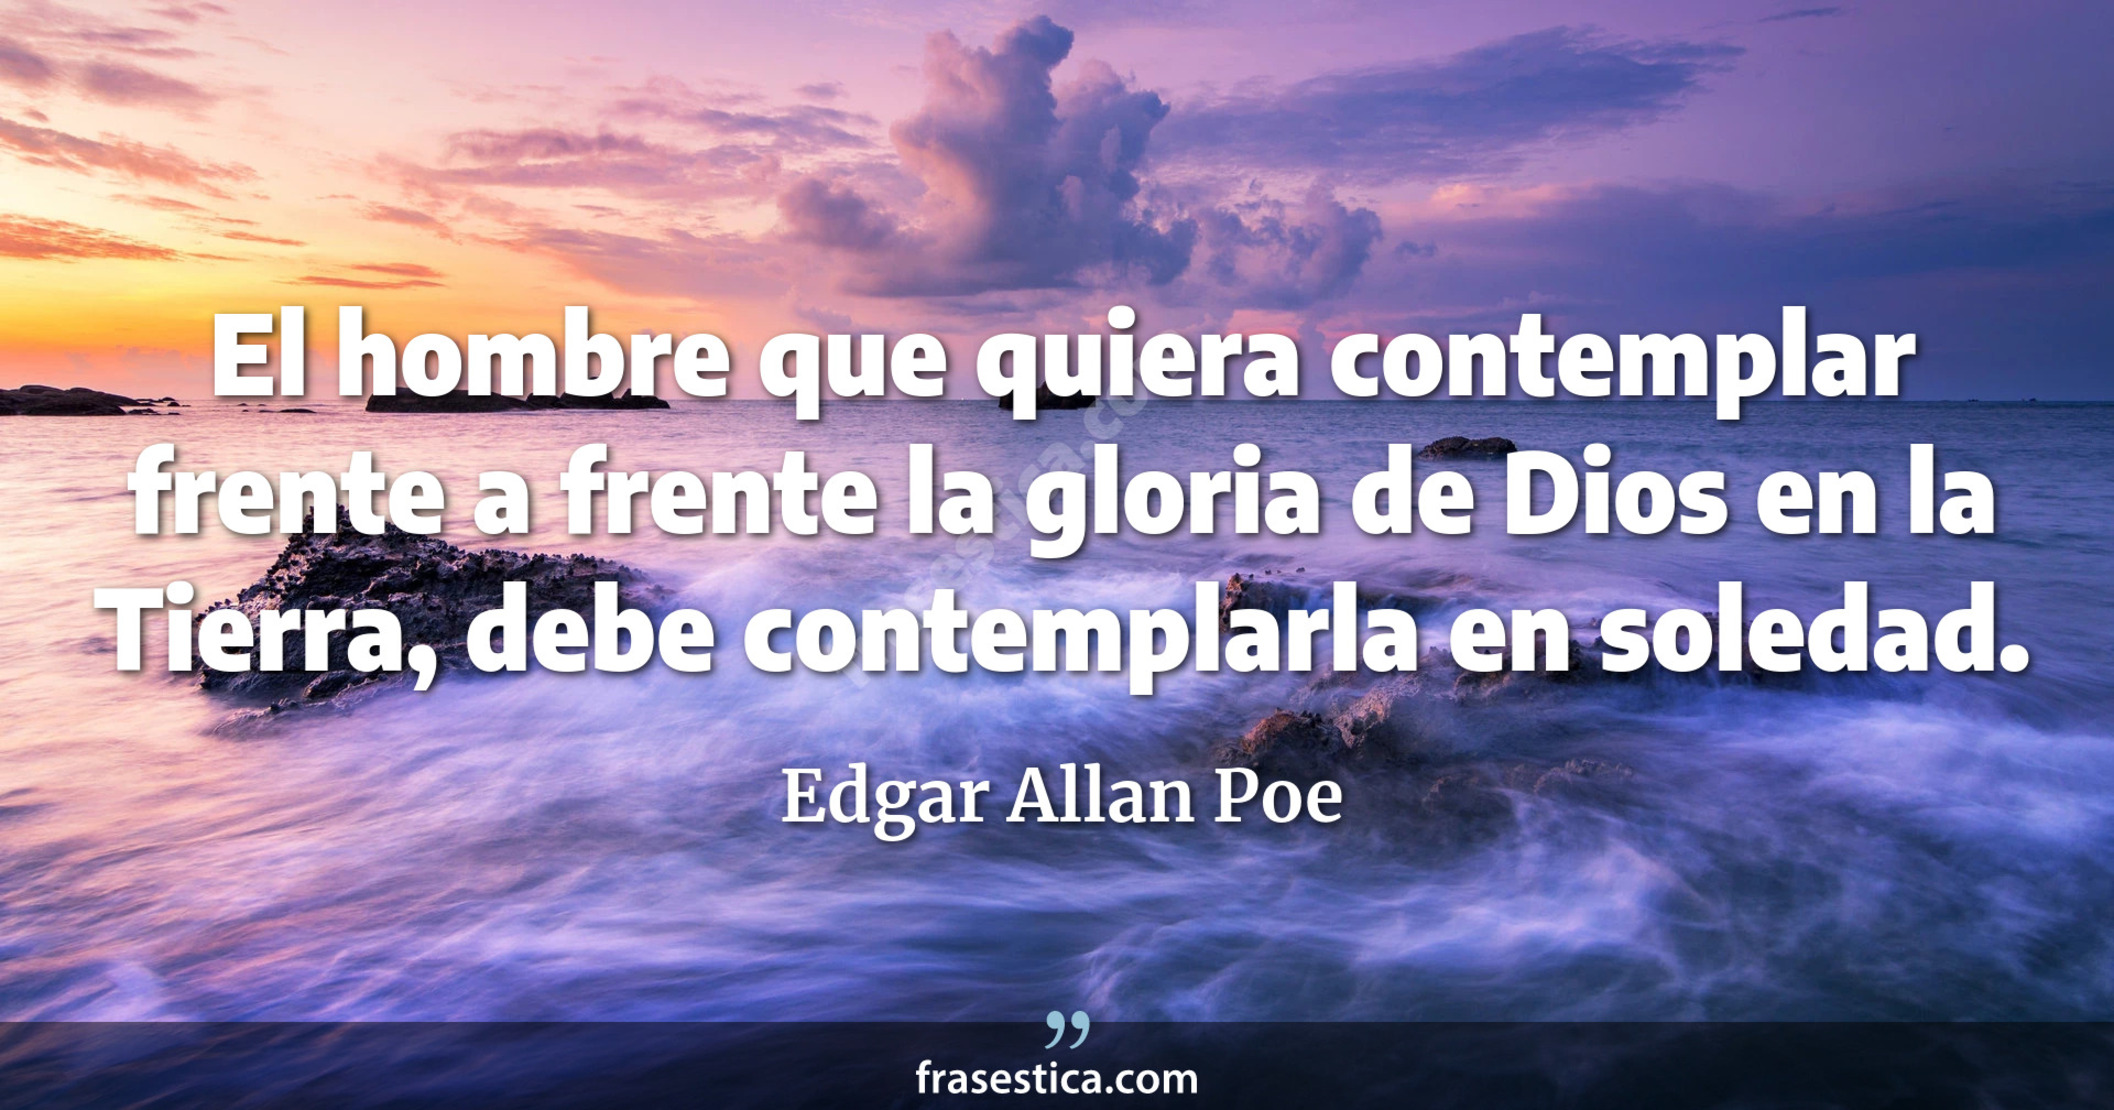 El hombre que quiera contemplar frente a frente la gloria de Dios en la Tierra, debe contemplarla en soledad. - Edgar Allan Poe